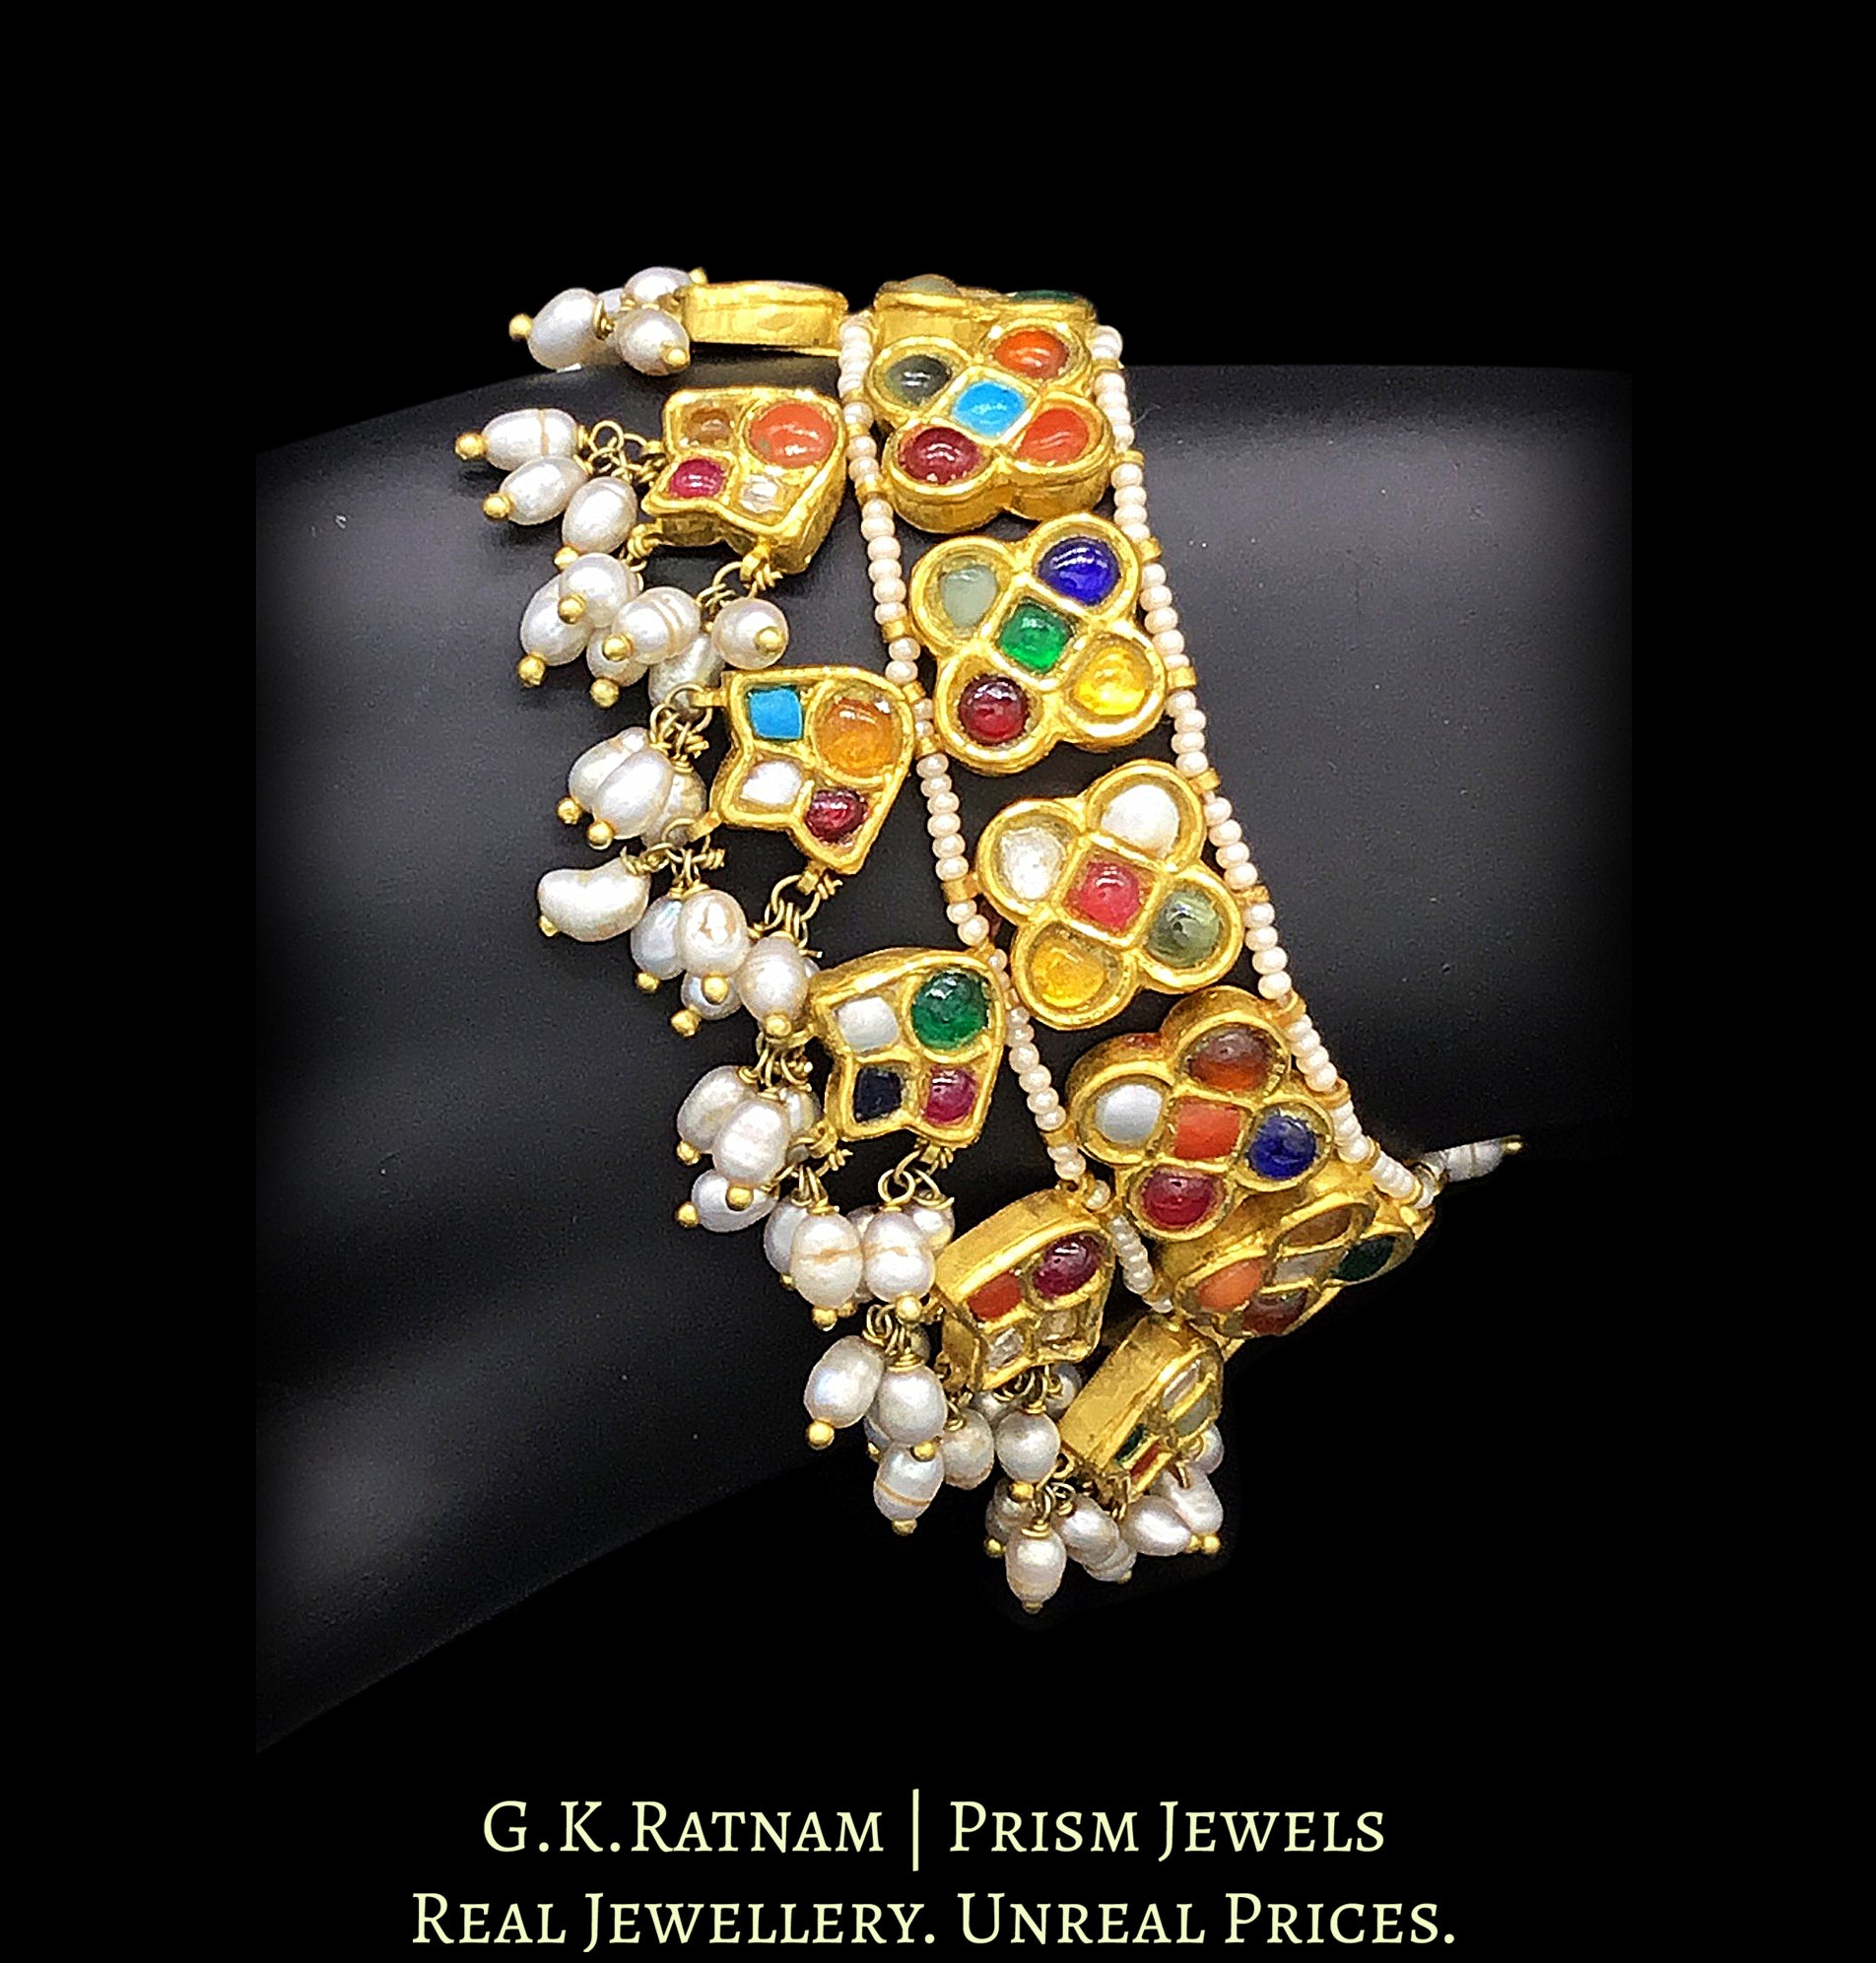 22k Gold and Diamond Polki Navratna Bracelet with Natural Freshwater Pearls - G. K. Ratnam